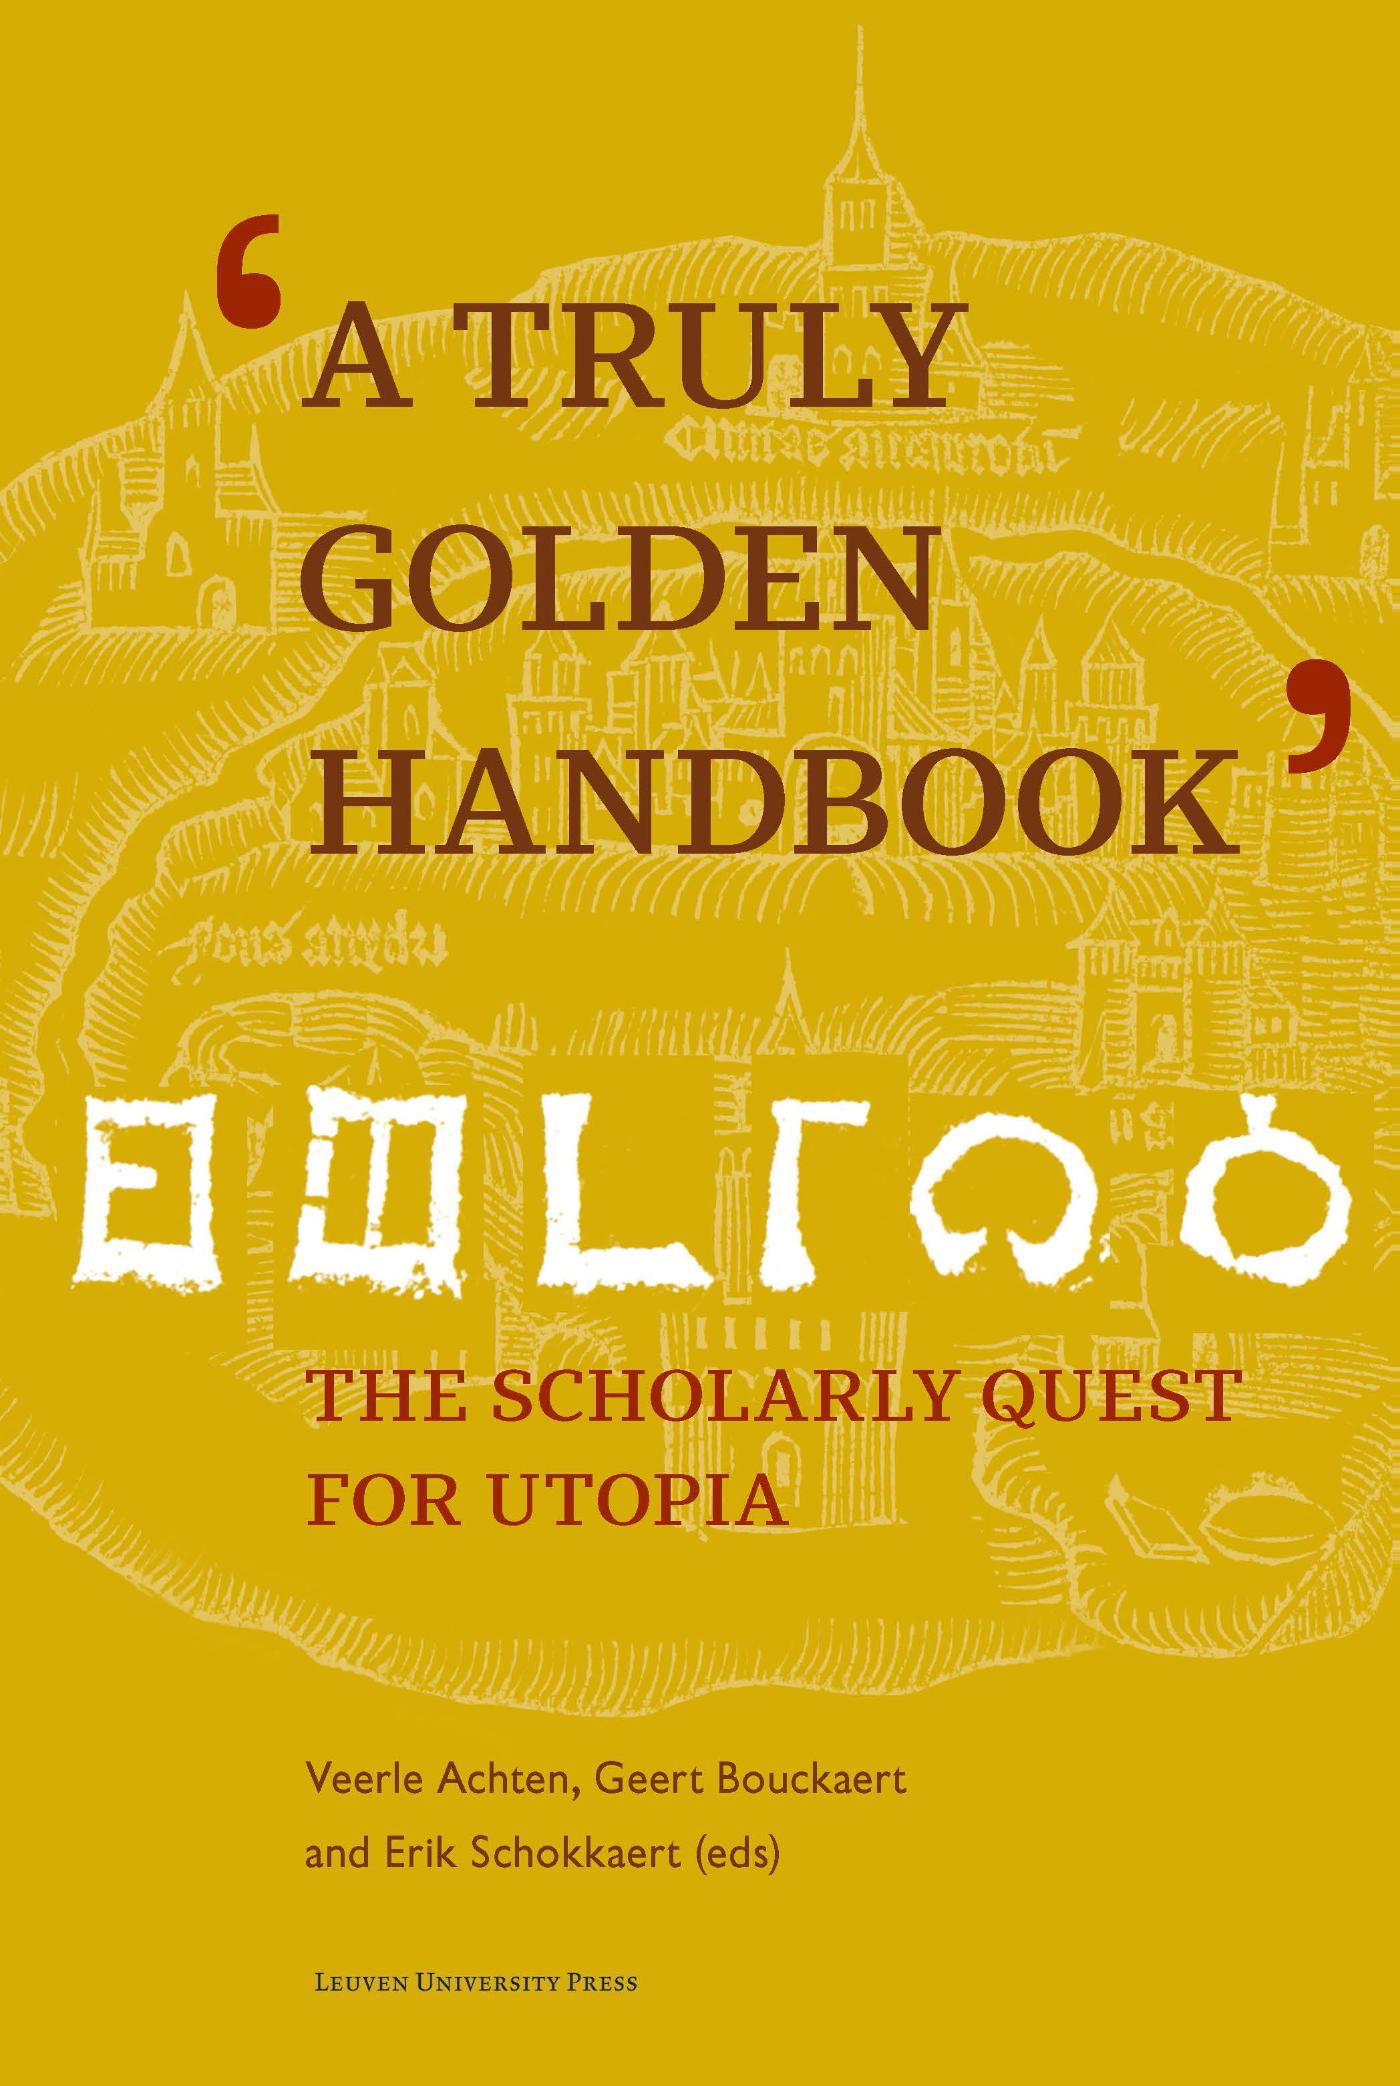 A truly golden handbook